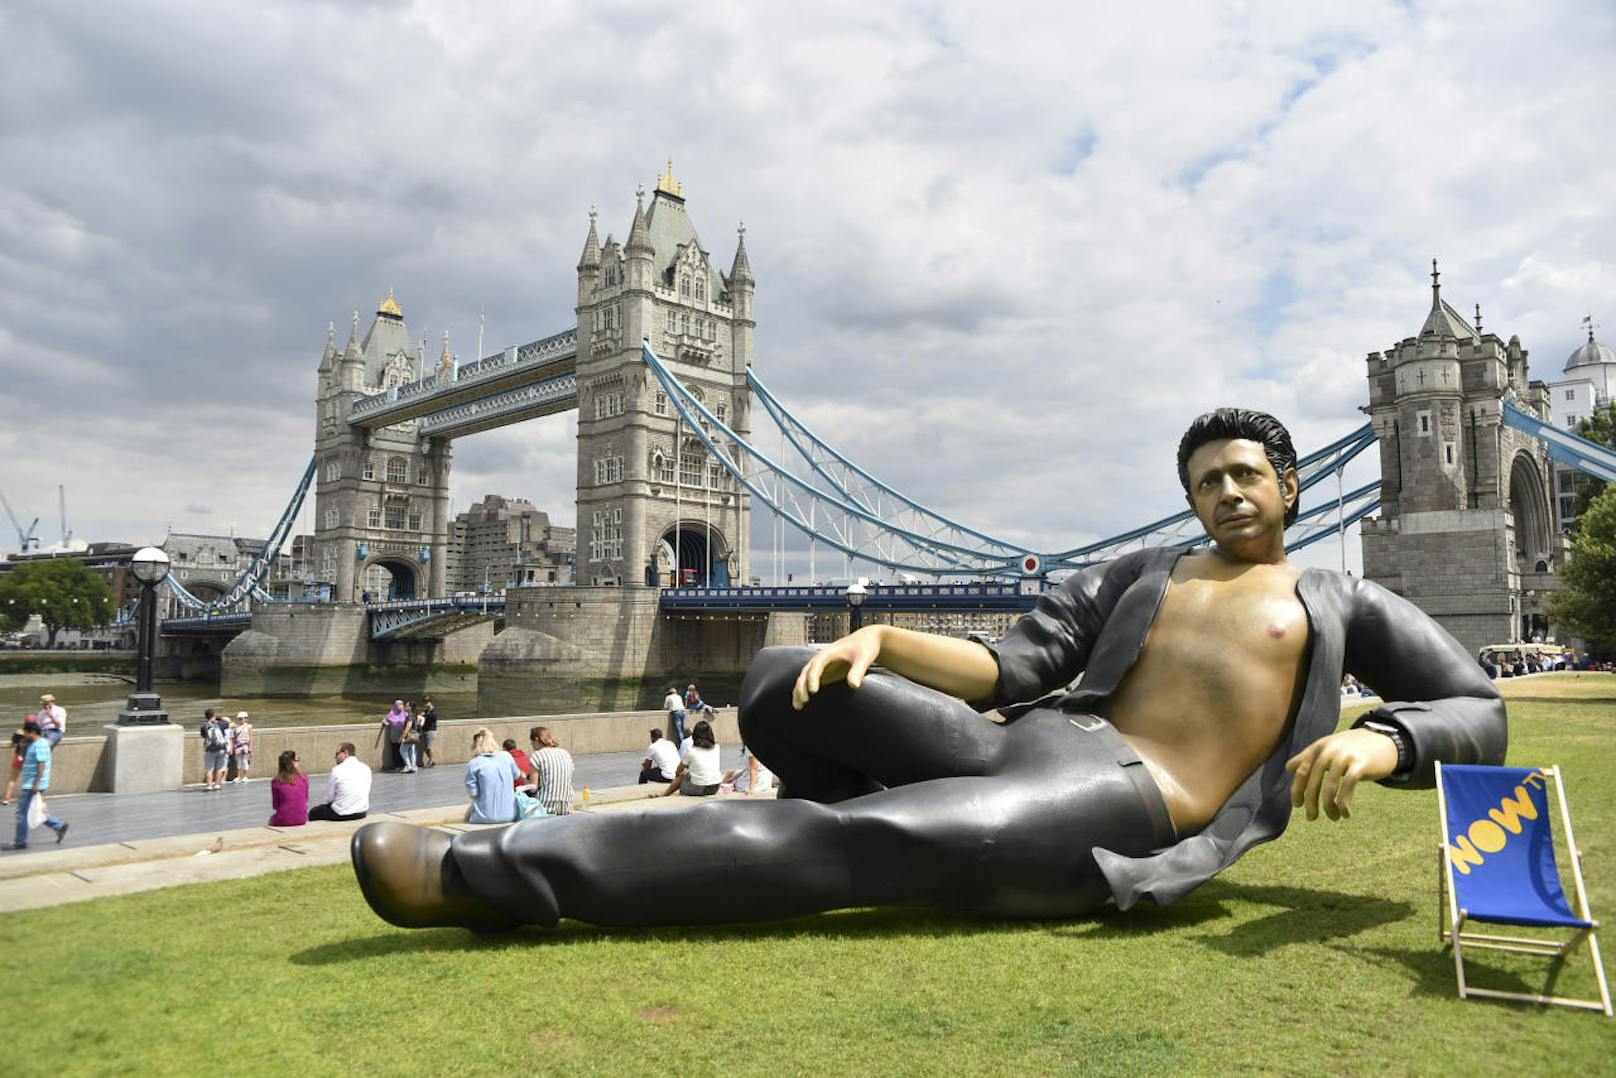 London (im Hintergrund die Tower Bridge) feiert das 25. Jubiläum von Jurassic Park mit einer riesigen Statue von Jeff Goldblum (Dr. Ian Malcolm) in seiner ikonischen Pose mit nacktem Oberkörper. 